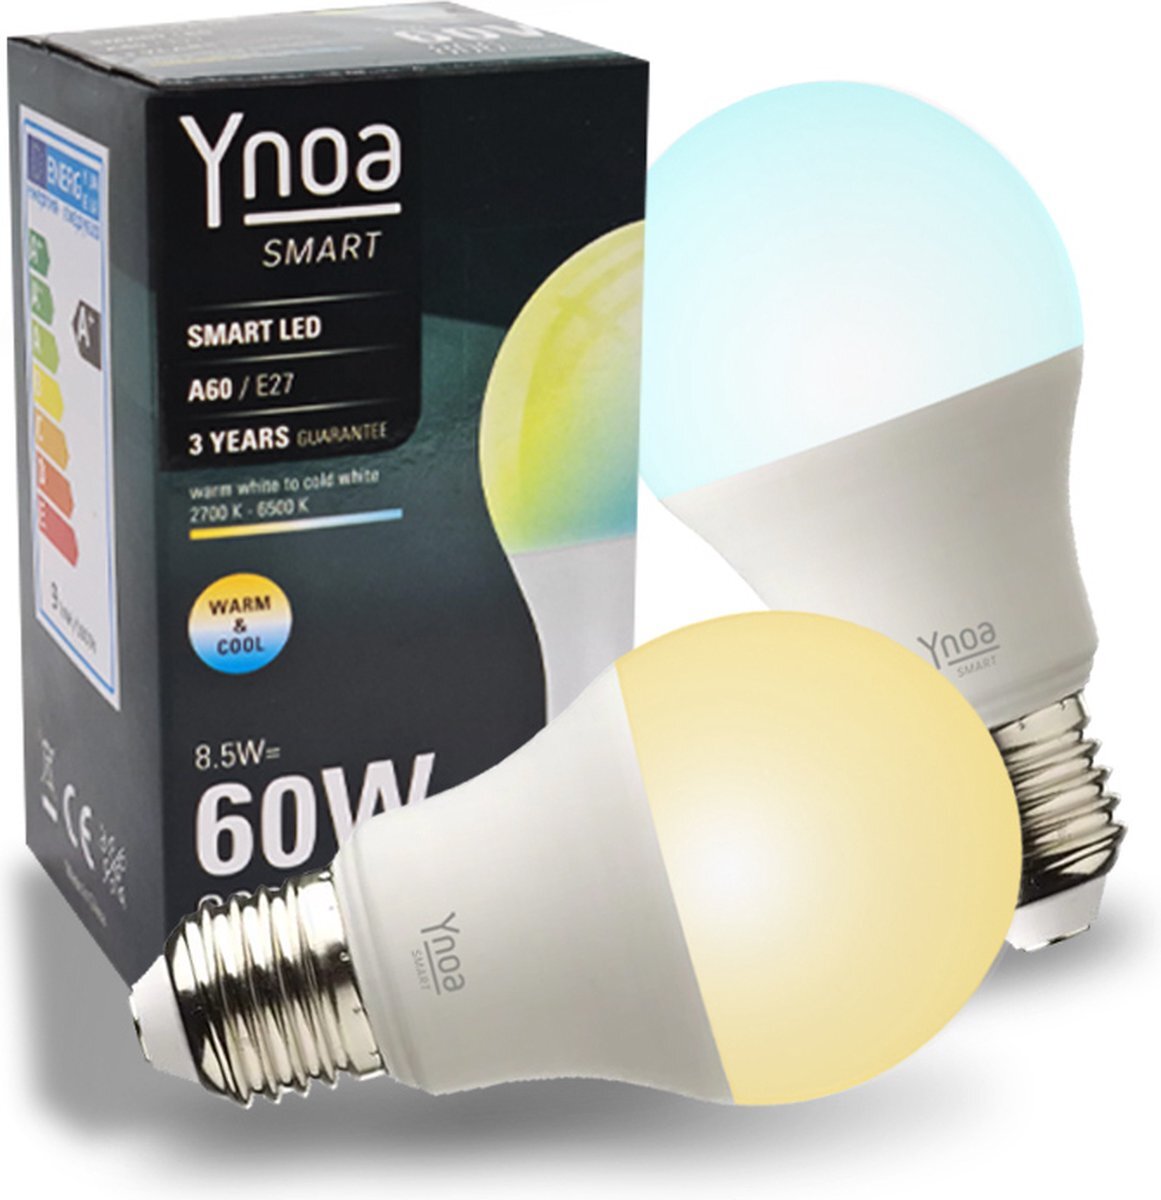 Ynoa Set van 2 Smart Lampen White Tones - E27 LED lamp - Zigbee 3.0 - Dimbaar - CCT - Werkt met o.a. Philips Hue en Homey